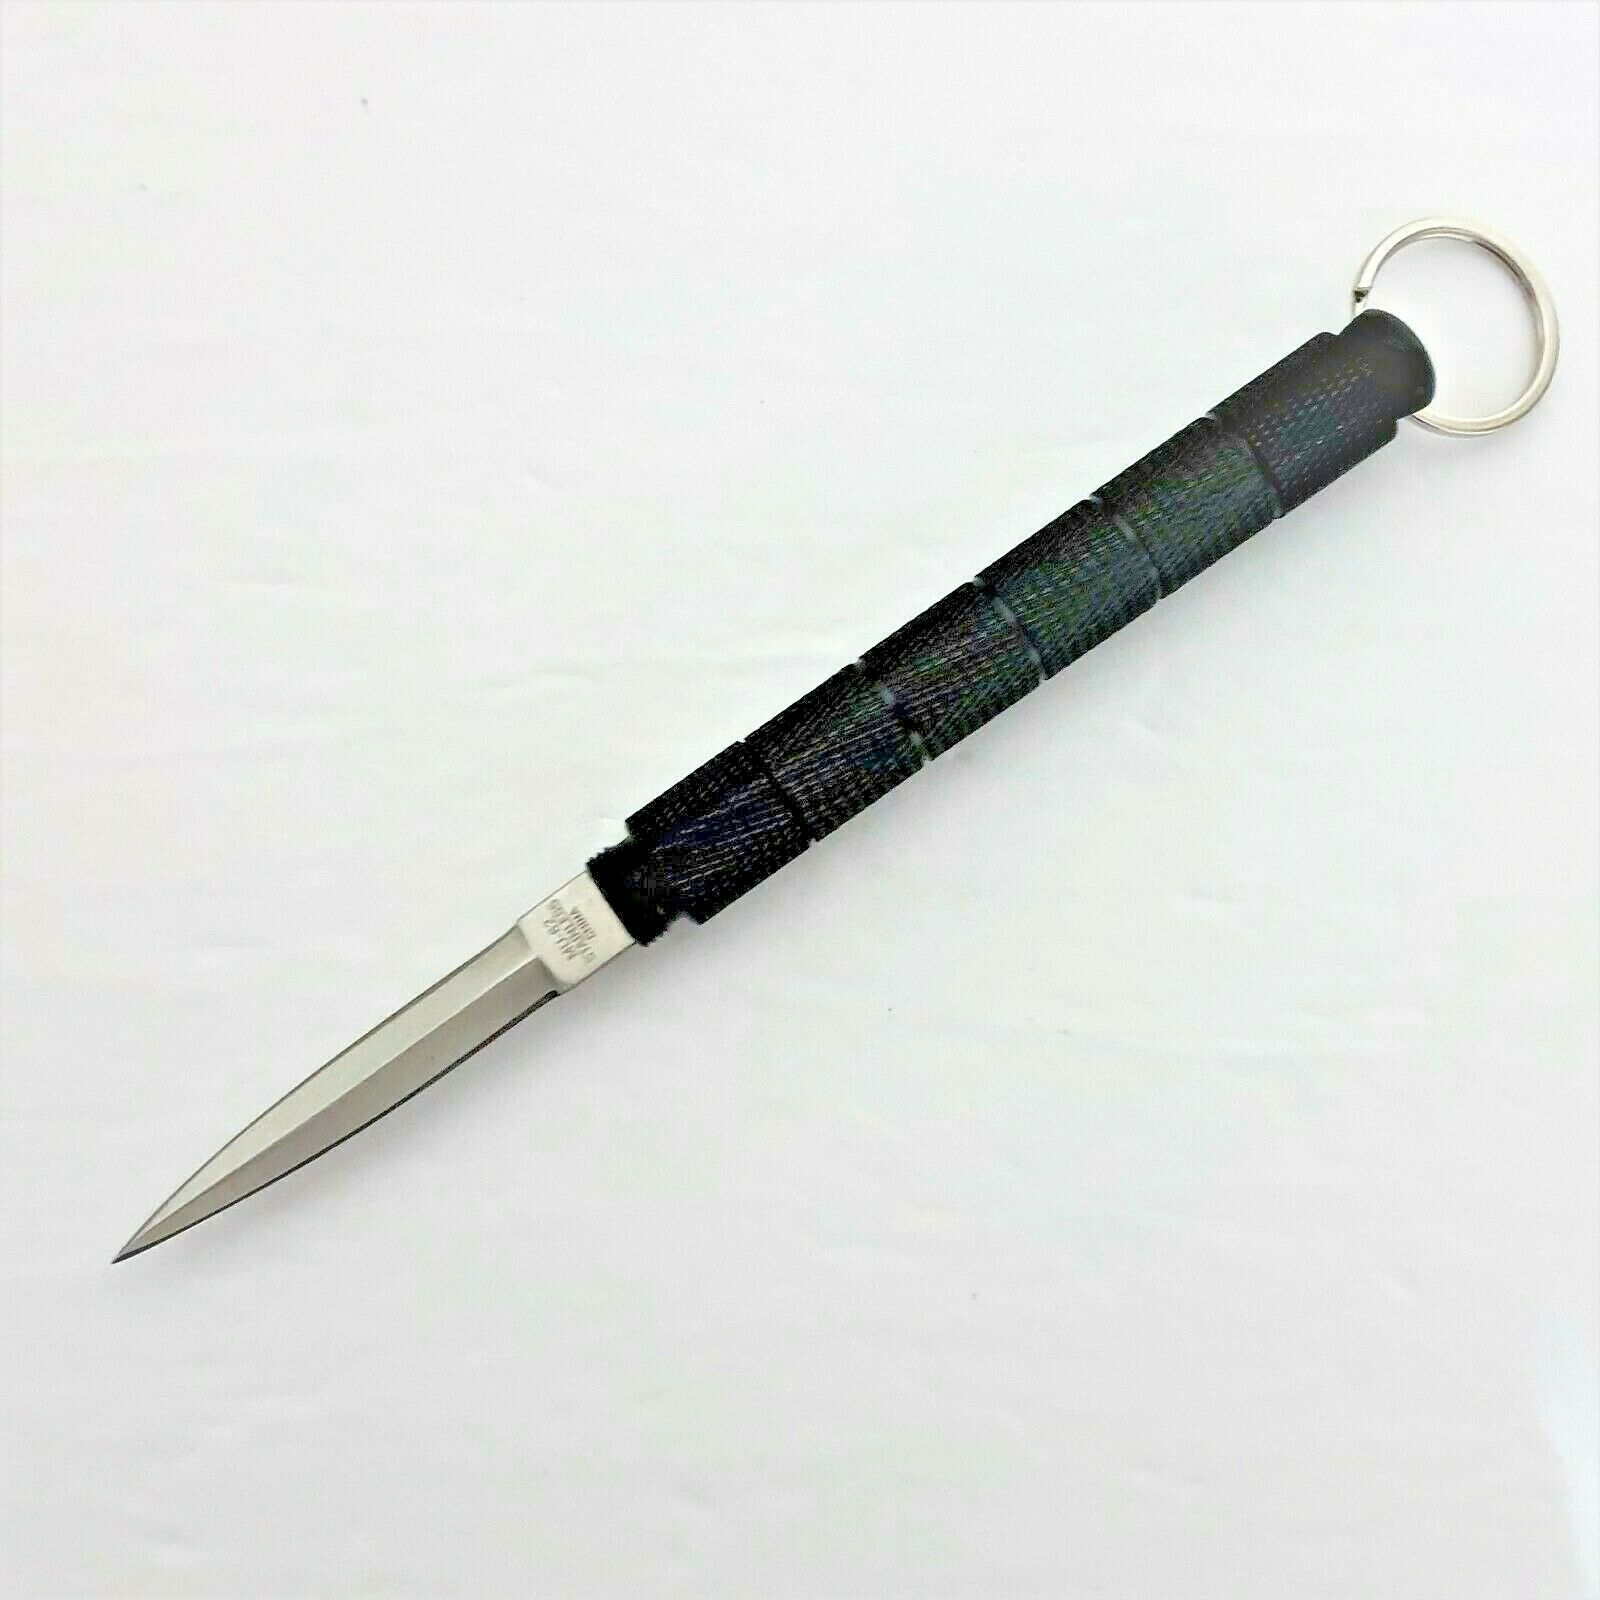 New Black Aluminum Glass Breaker Knife Self Defense Tool Usa Seller